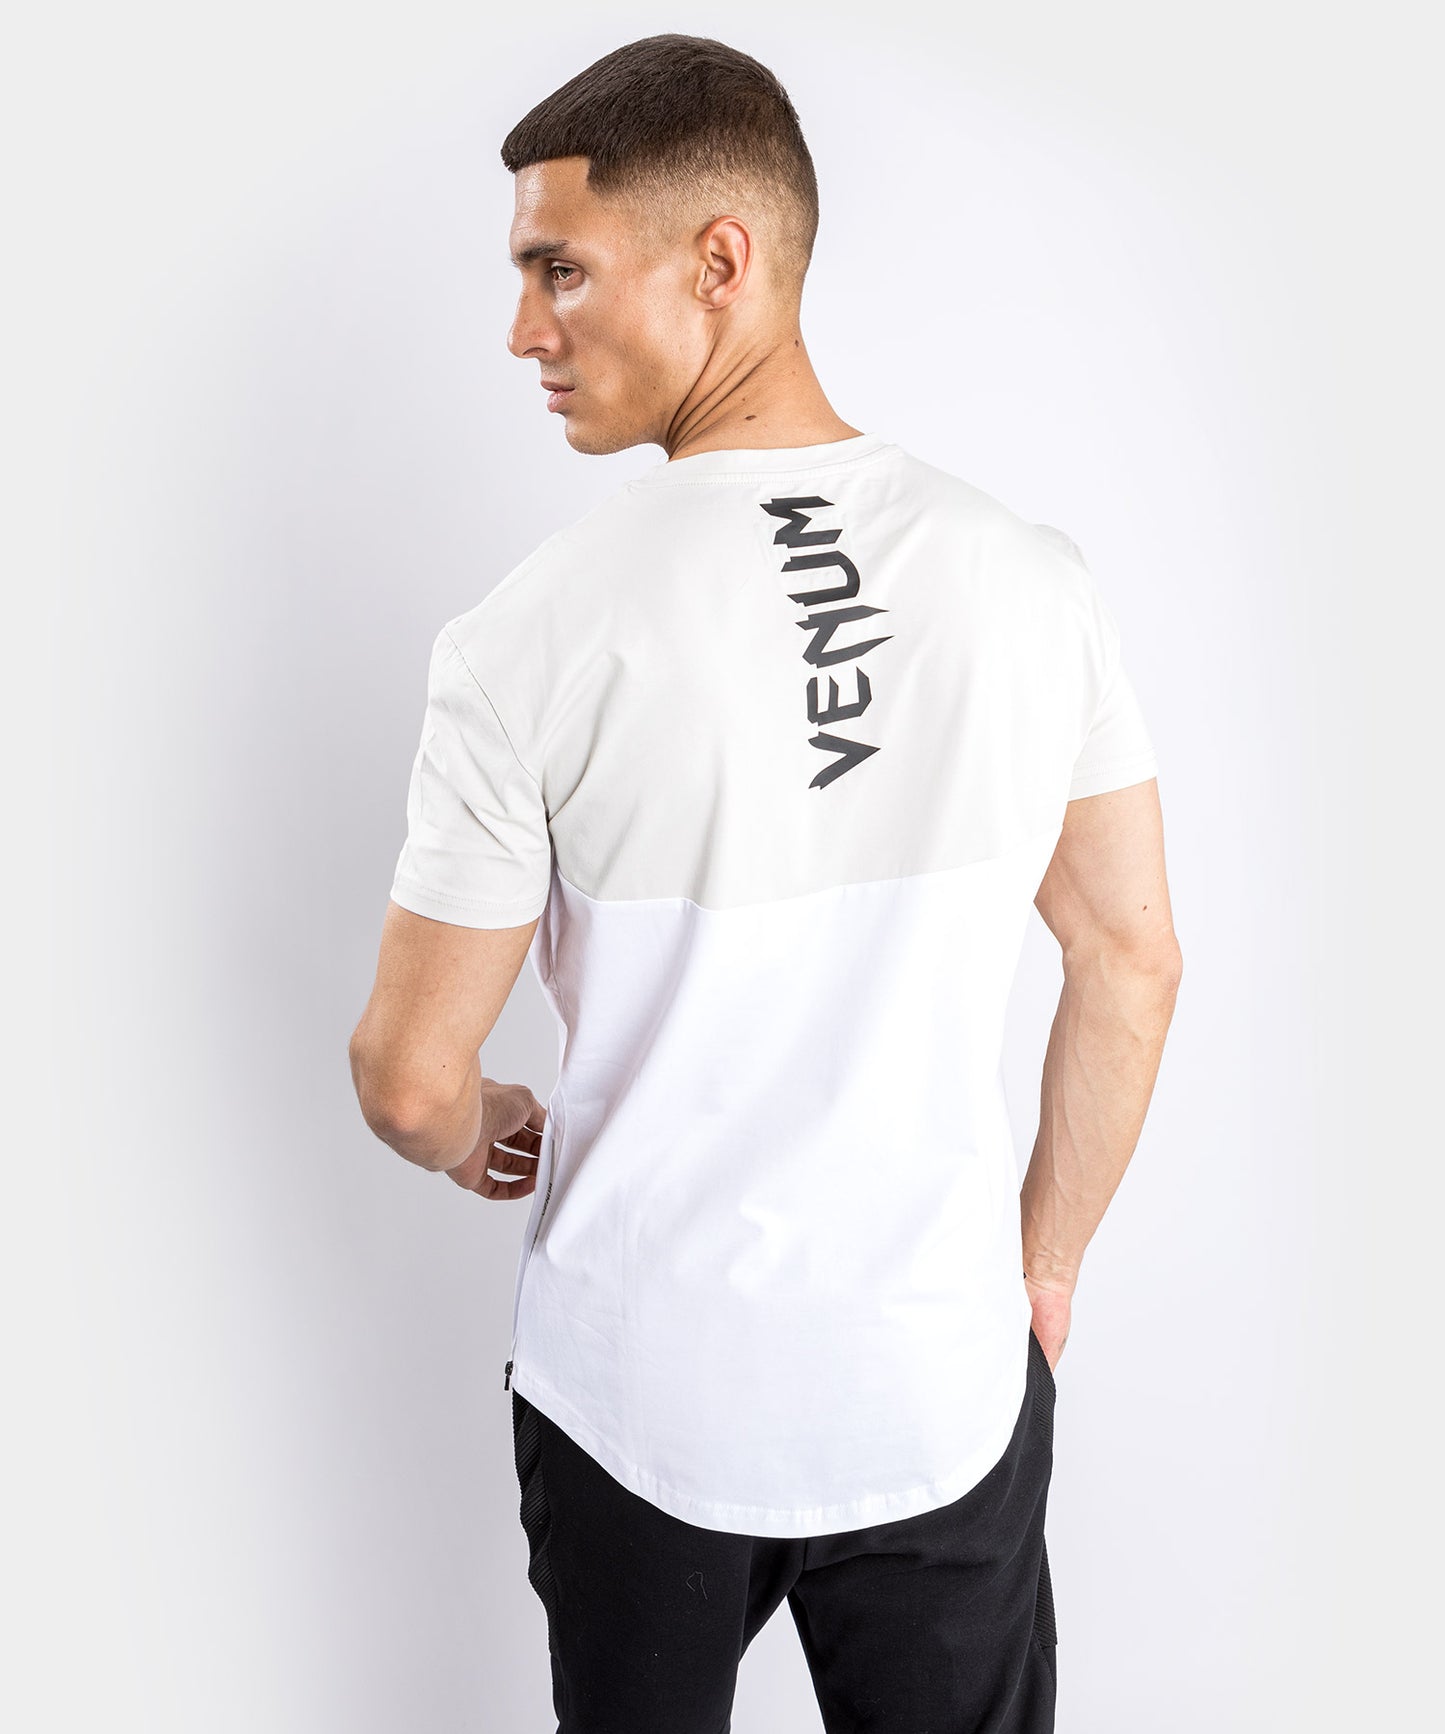 Camiseta Venum Laser 2.0 - Blanco